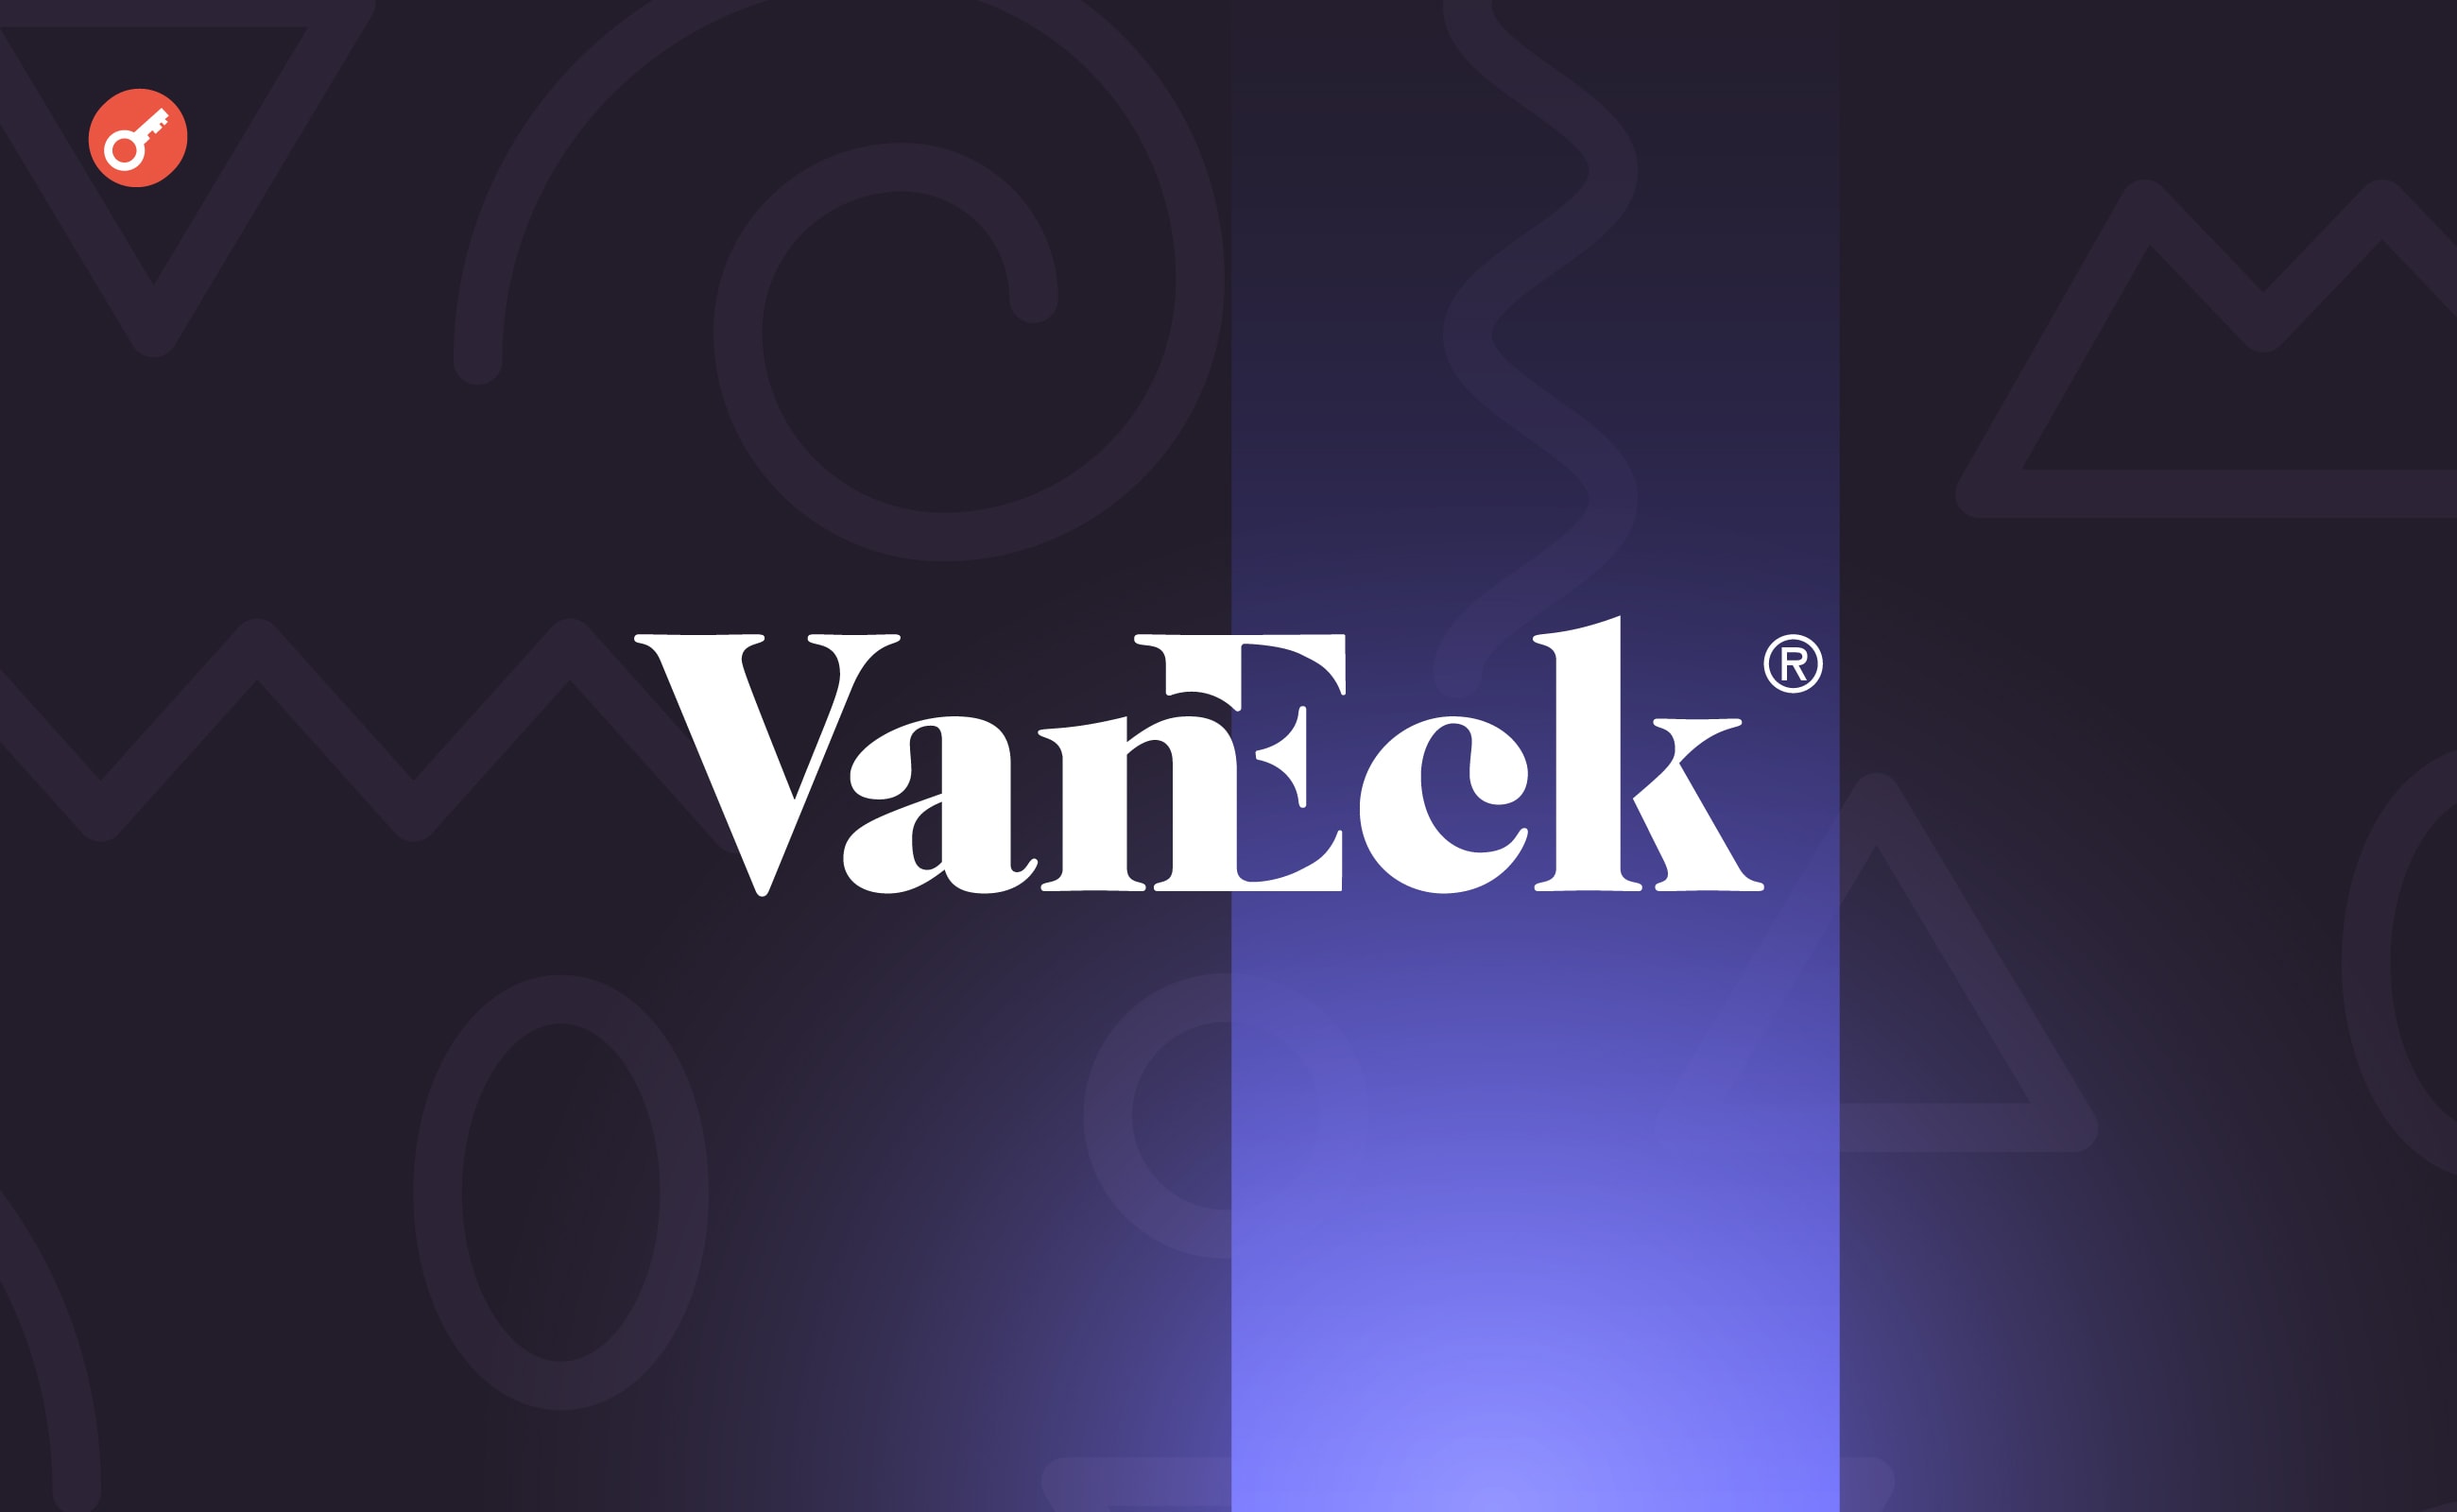 VanEck запустила NFT-маркетплейс і майданчик цифрових активів SegMint. Головний колаж новини.